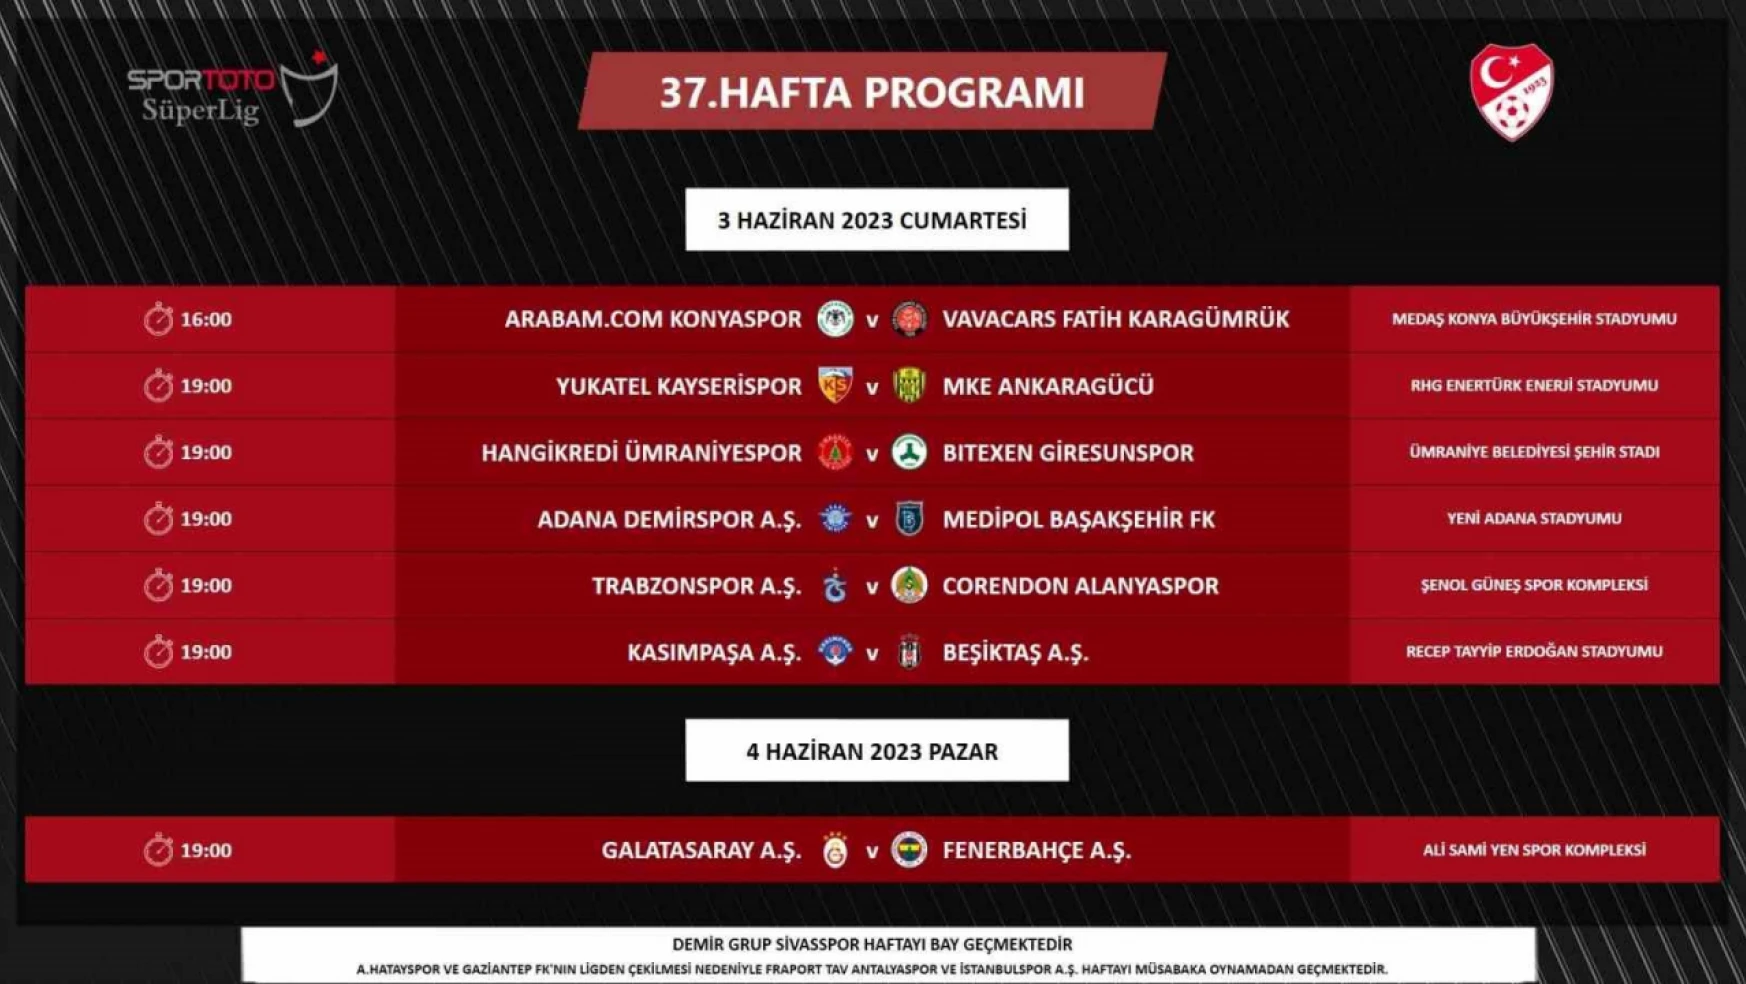 Galatasaray - Fenerbahçe derbisi 4 Haziran'da oynanacak